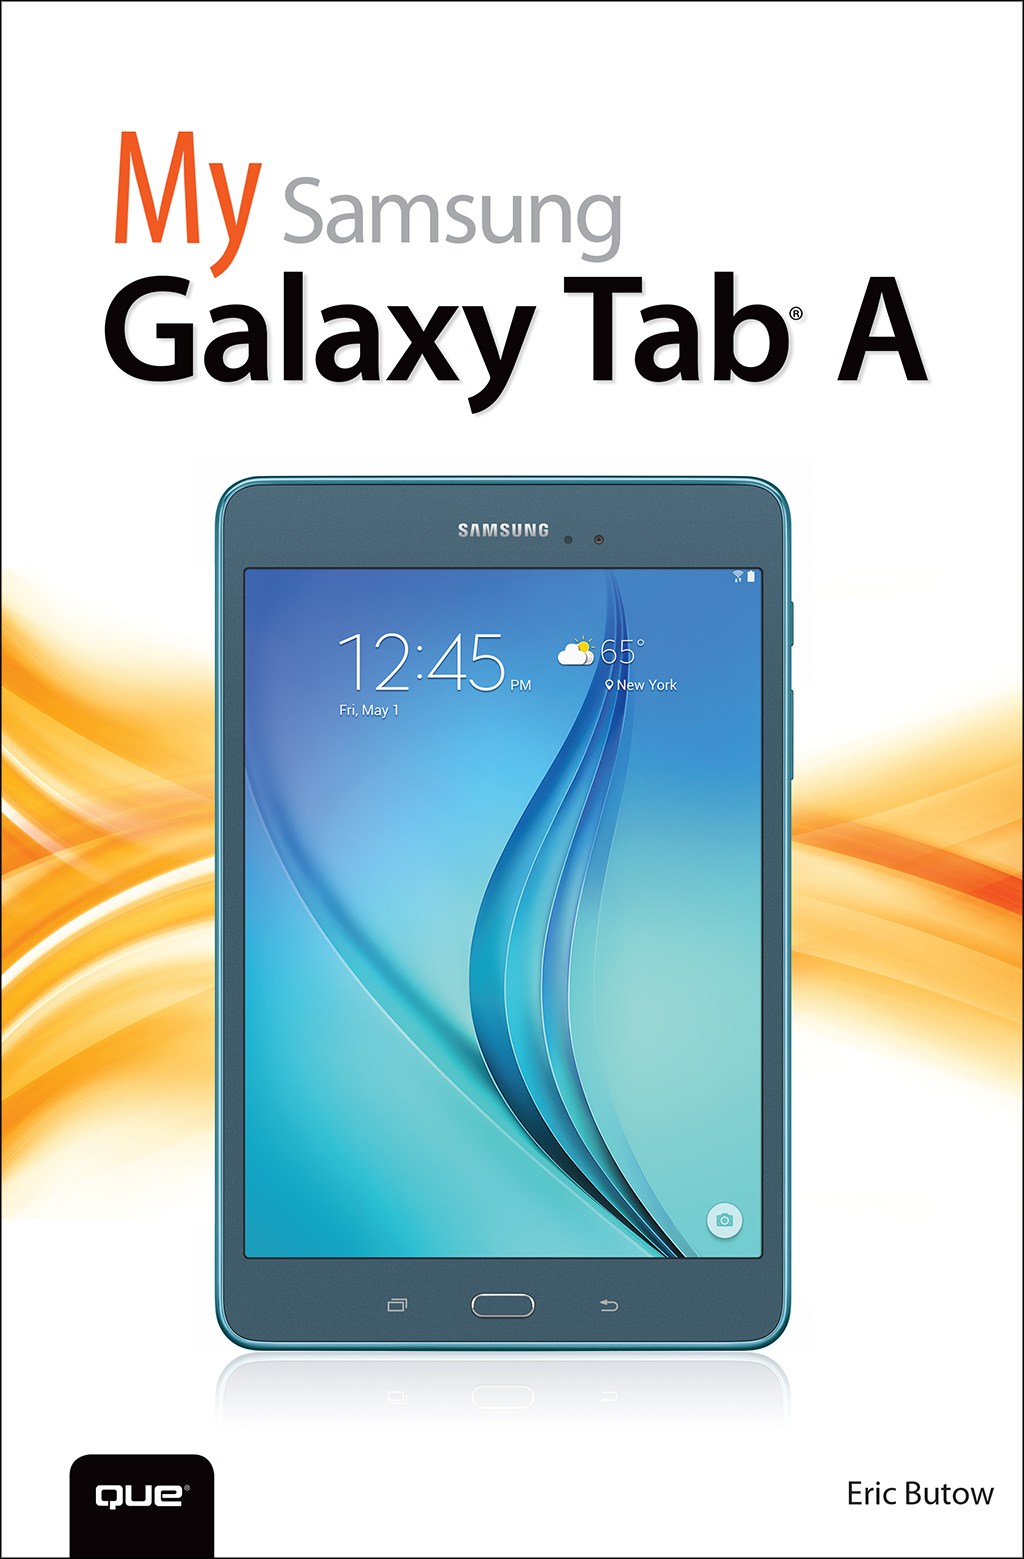 My Samsung Galaxy Tab A